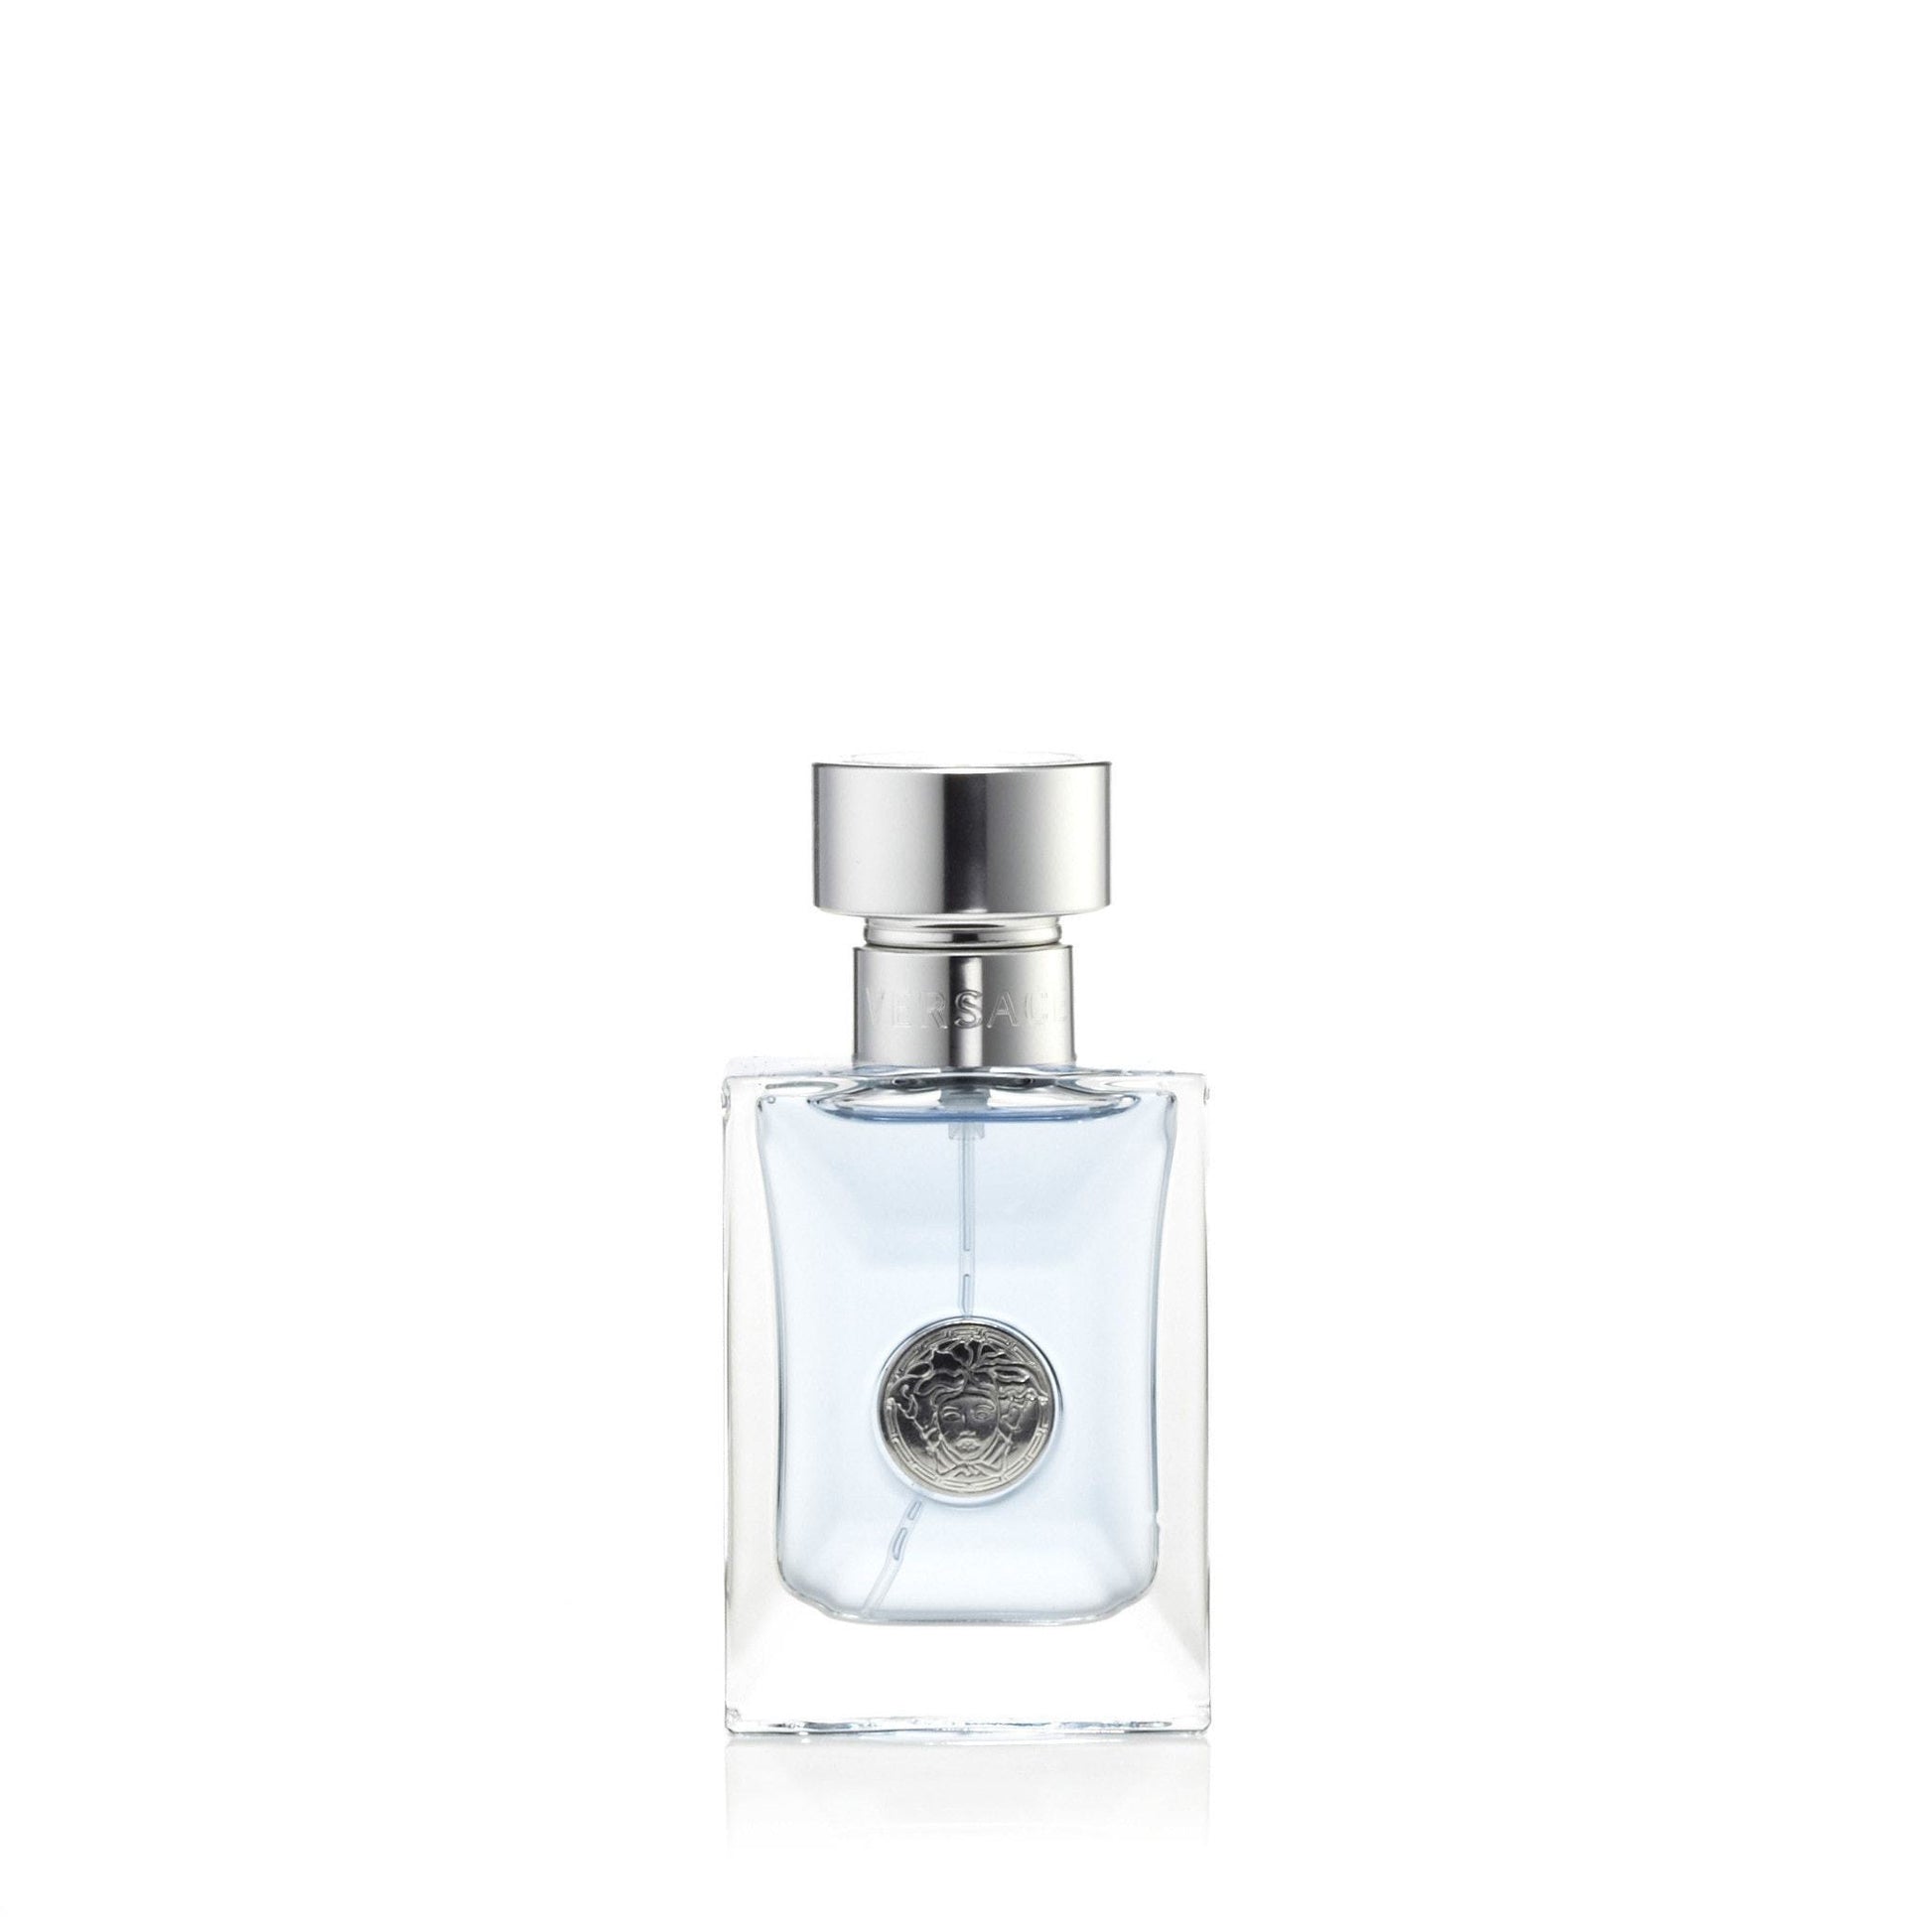 Pour Homme Eau de Toilette Spray for Men by Versace, Product image 3